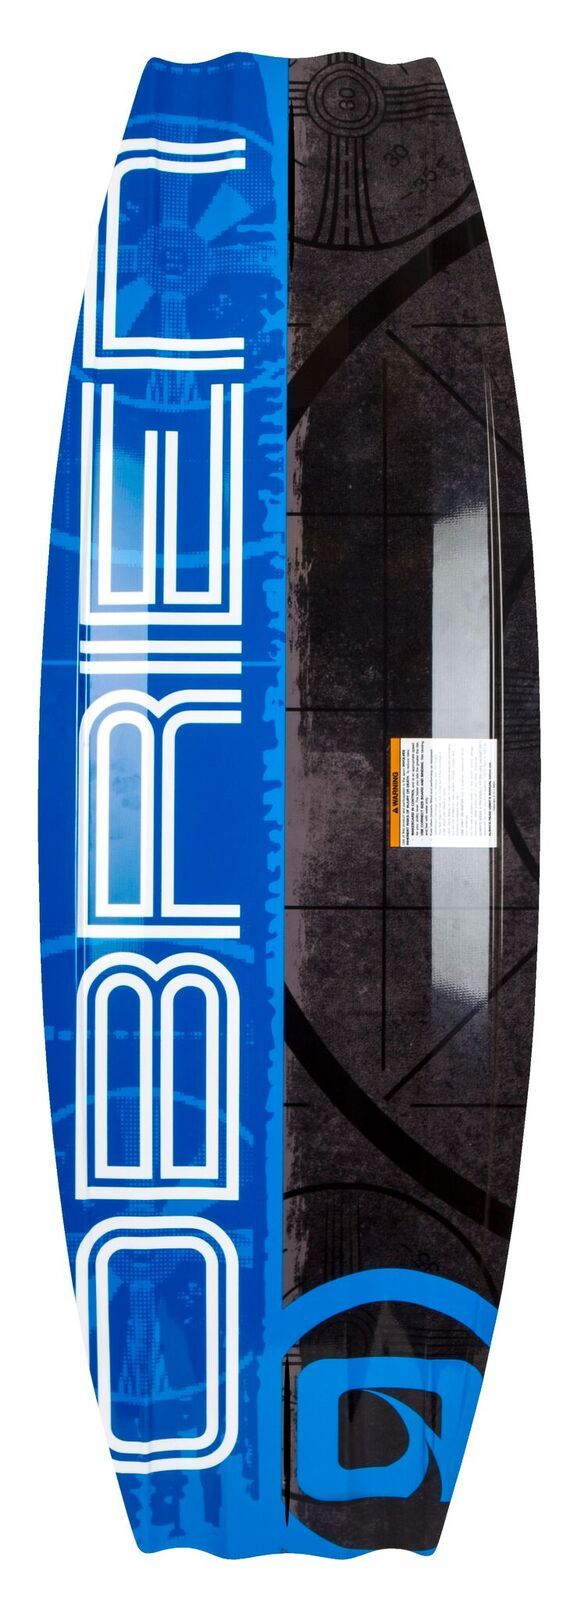 Pack Planche de wakeboard bateau System Bleu 140 cm + Chausse Clutch 41/45